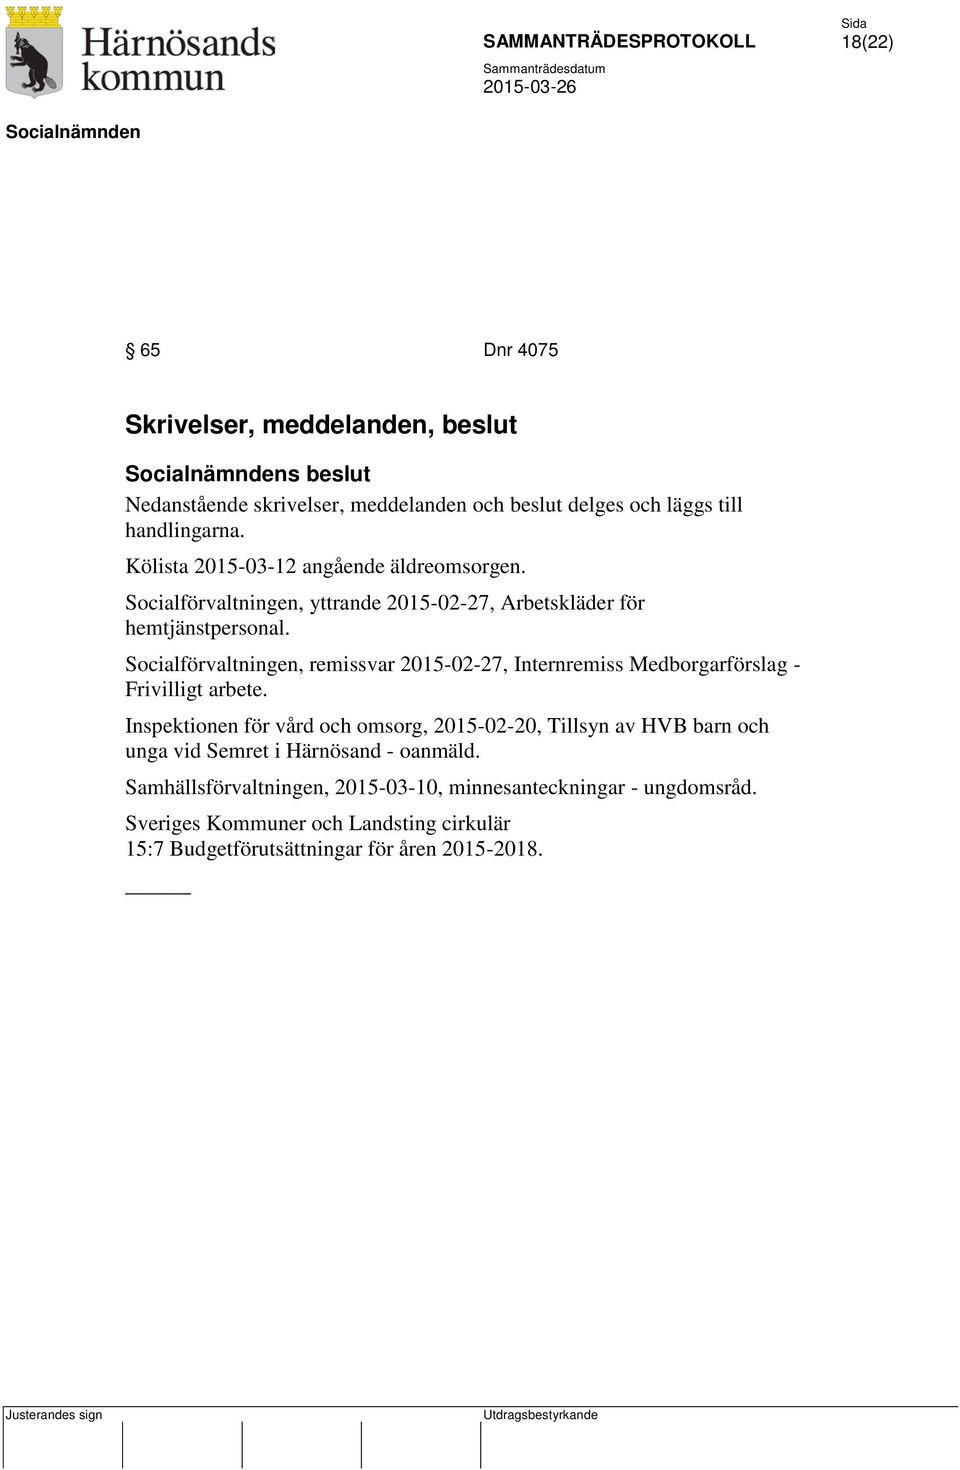 Socialförvaltningen, remissvar 2015-02-27, Internremiss Medborgarförslag - Frivilligt arbete.